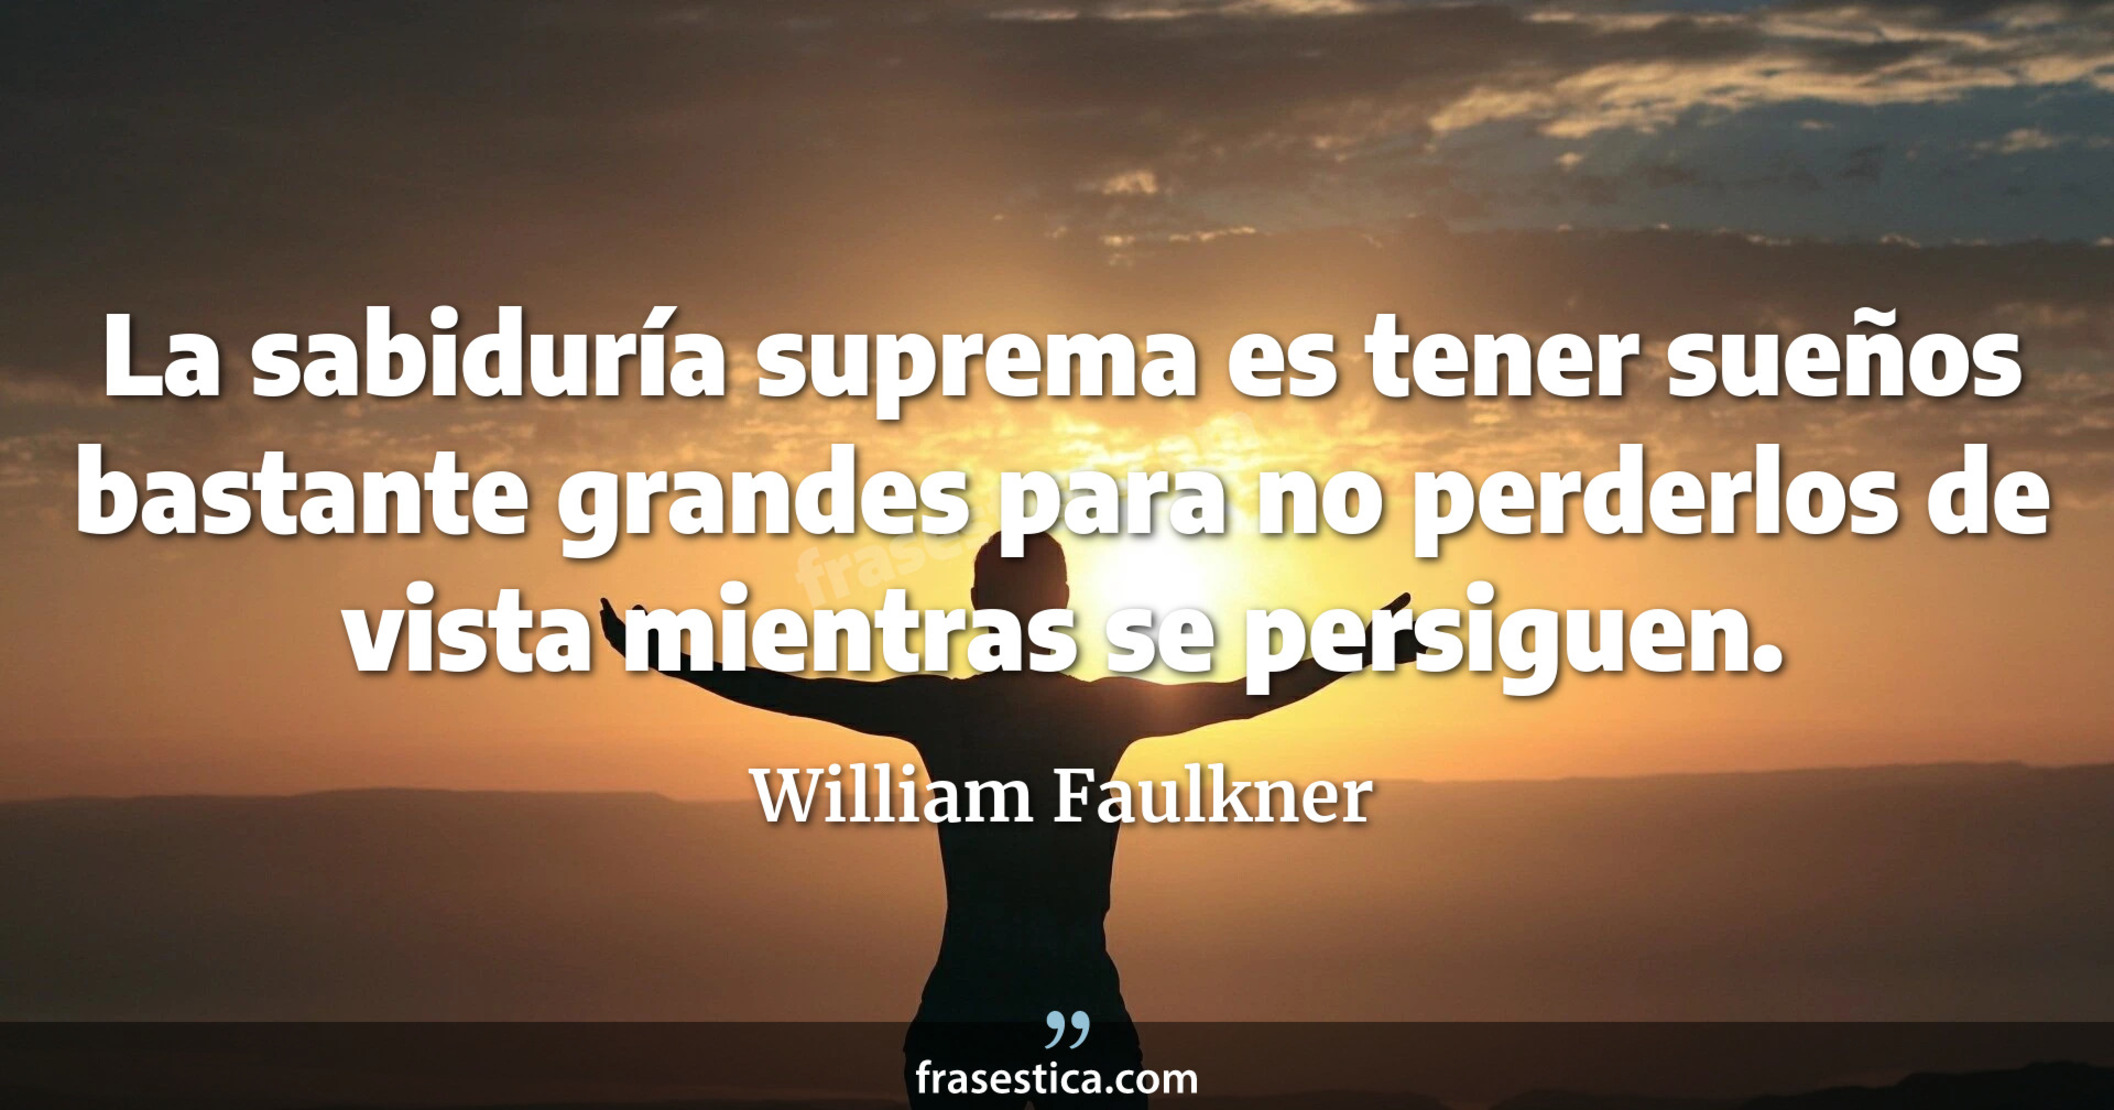 La sabiduría suprema es tener sueños bastante grandes para no perderlos de vista mientras se persiguen. - William Faulkner